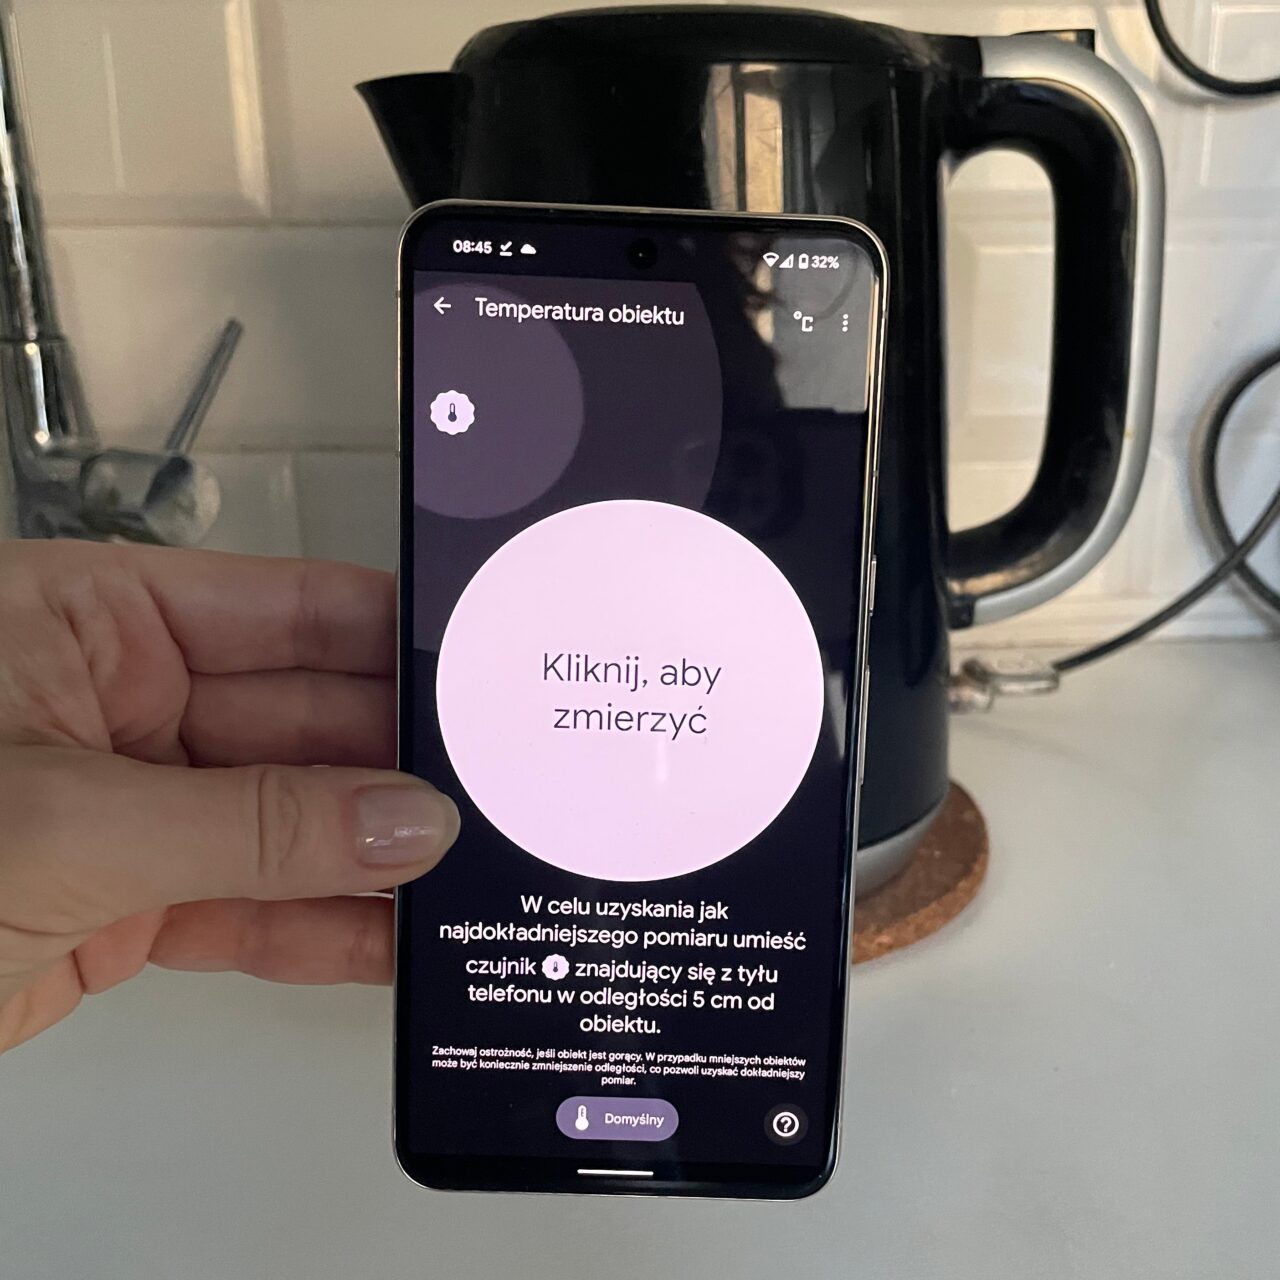 Osoba trzyma smartfon z otwartą aplikacją do mierzenia temperatury obiektów, z instrukcją "Kliknij, aby zmierzyć" na ekranie.